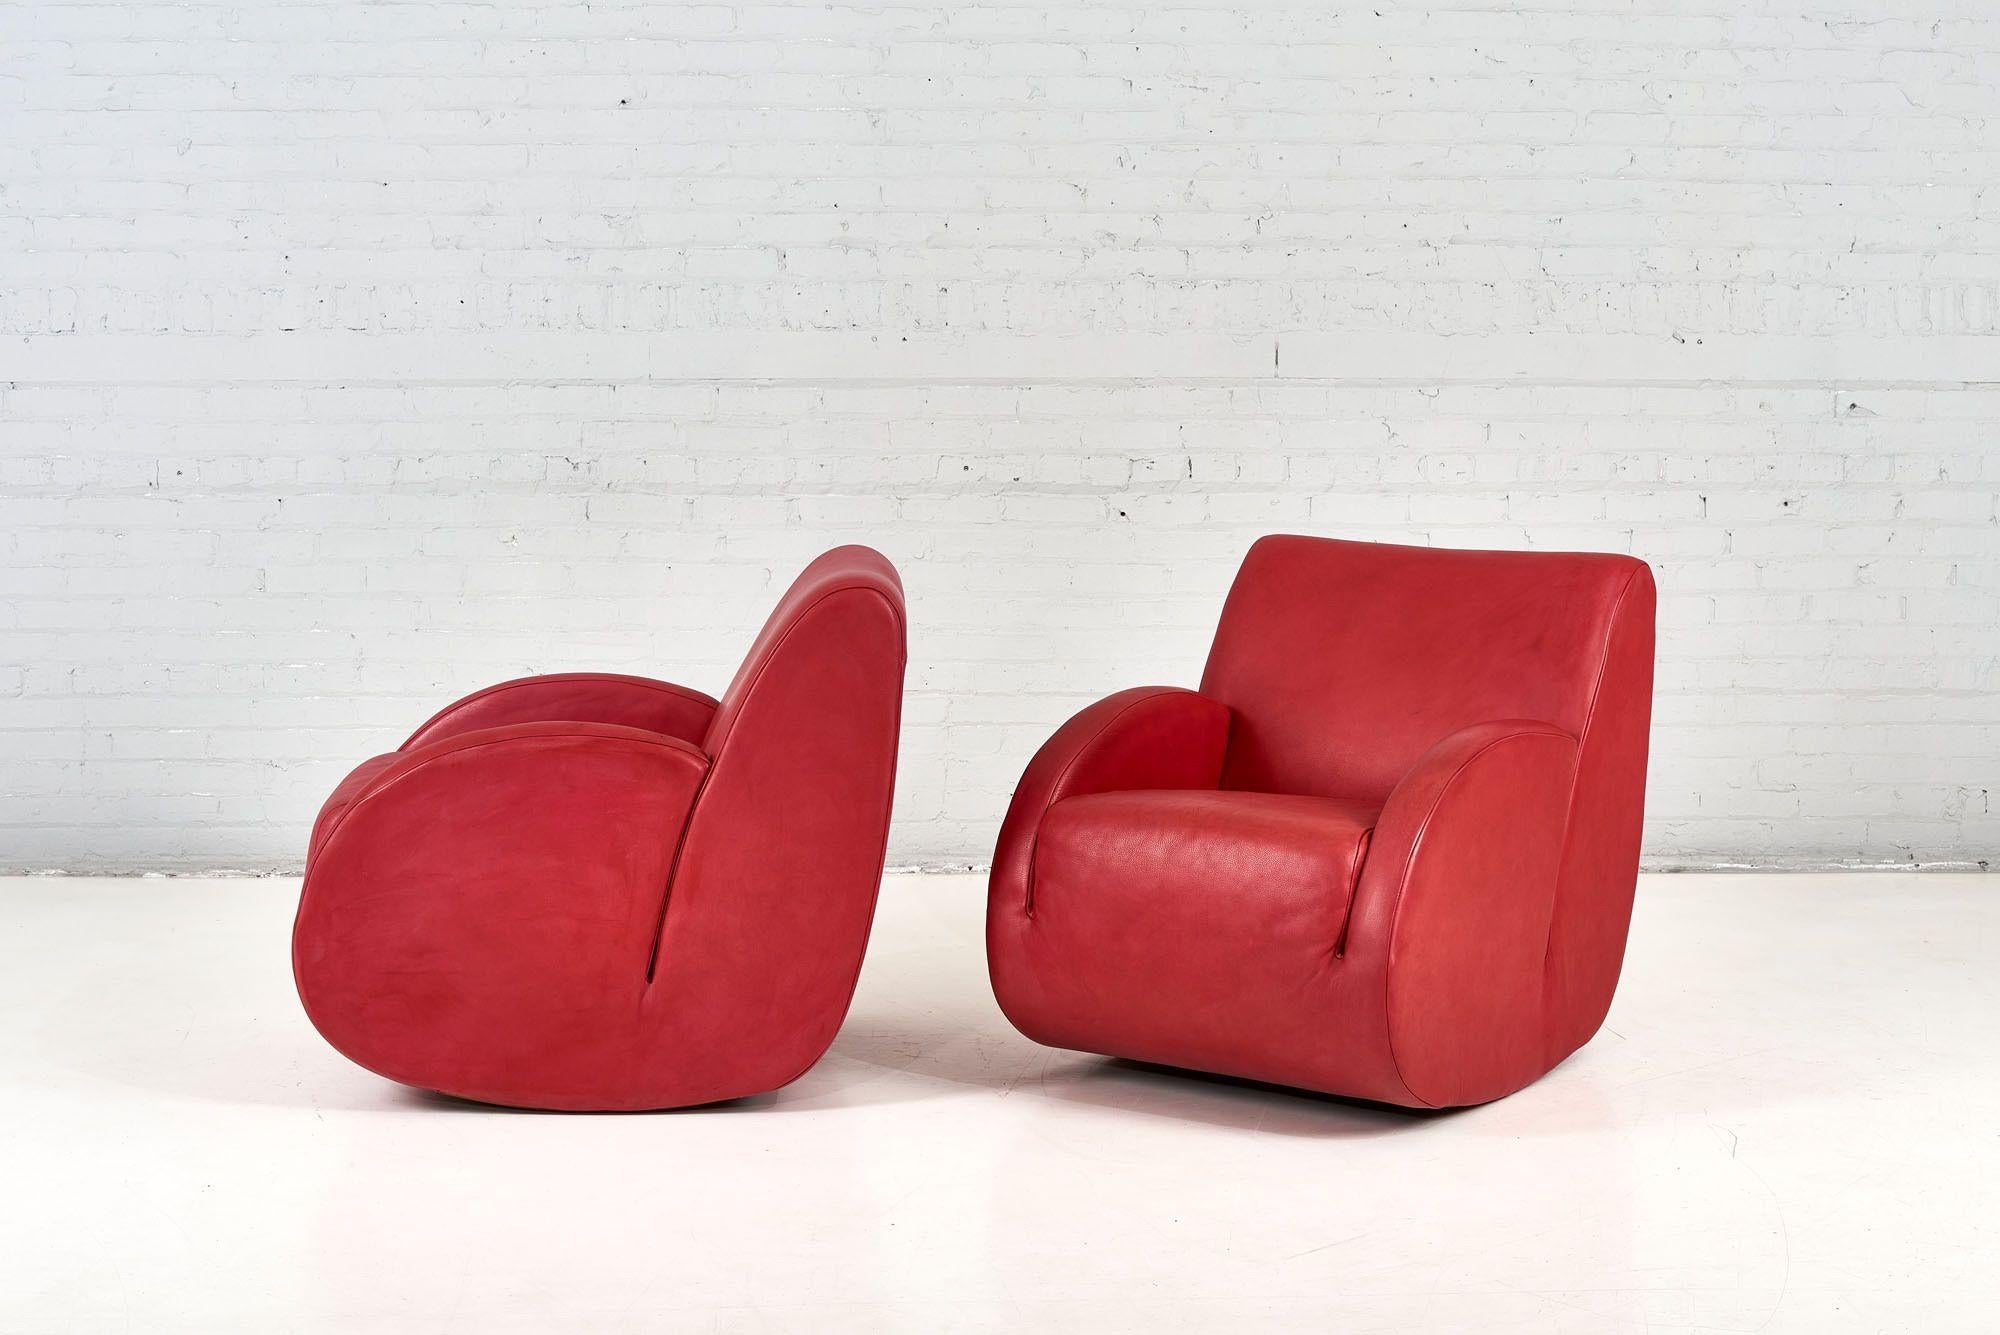 Pair Vladimir Kagan Leather Rocking Chairs 1